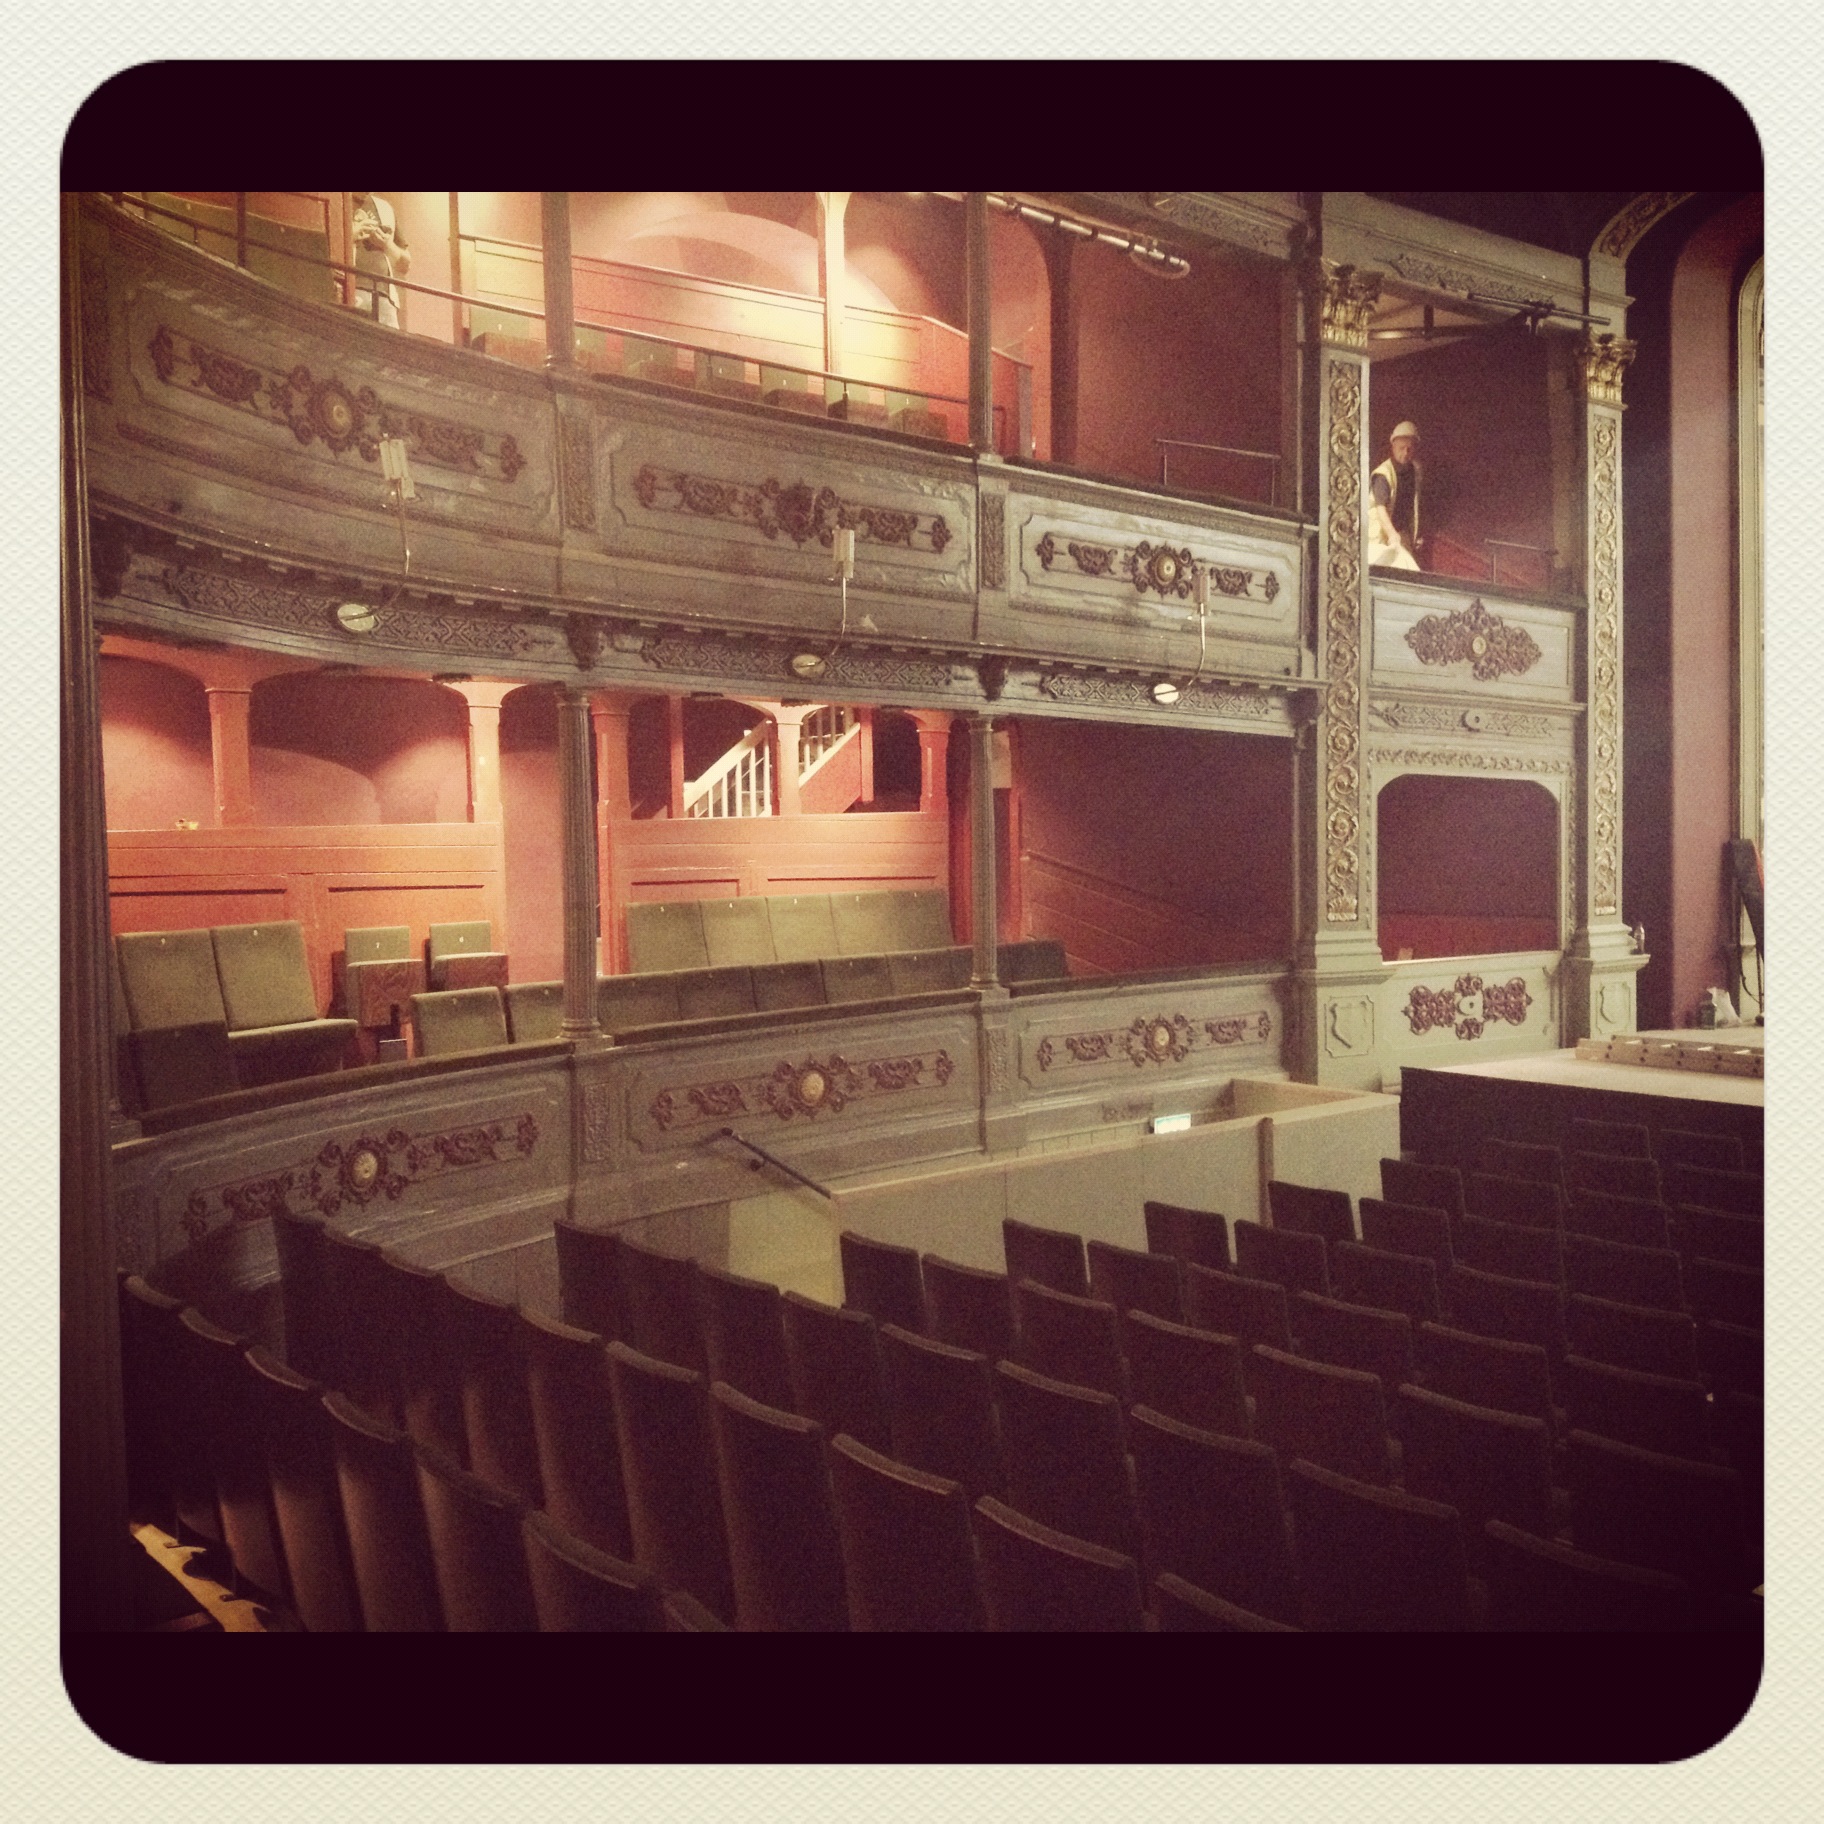 Bristol Old Vic auditorium under refurbishment